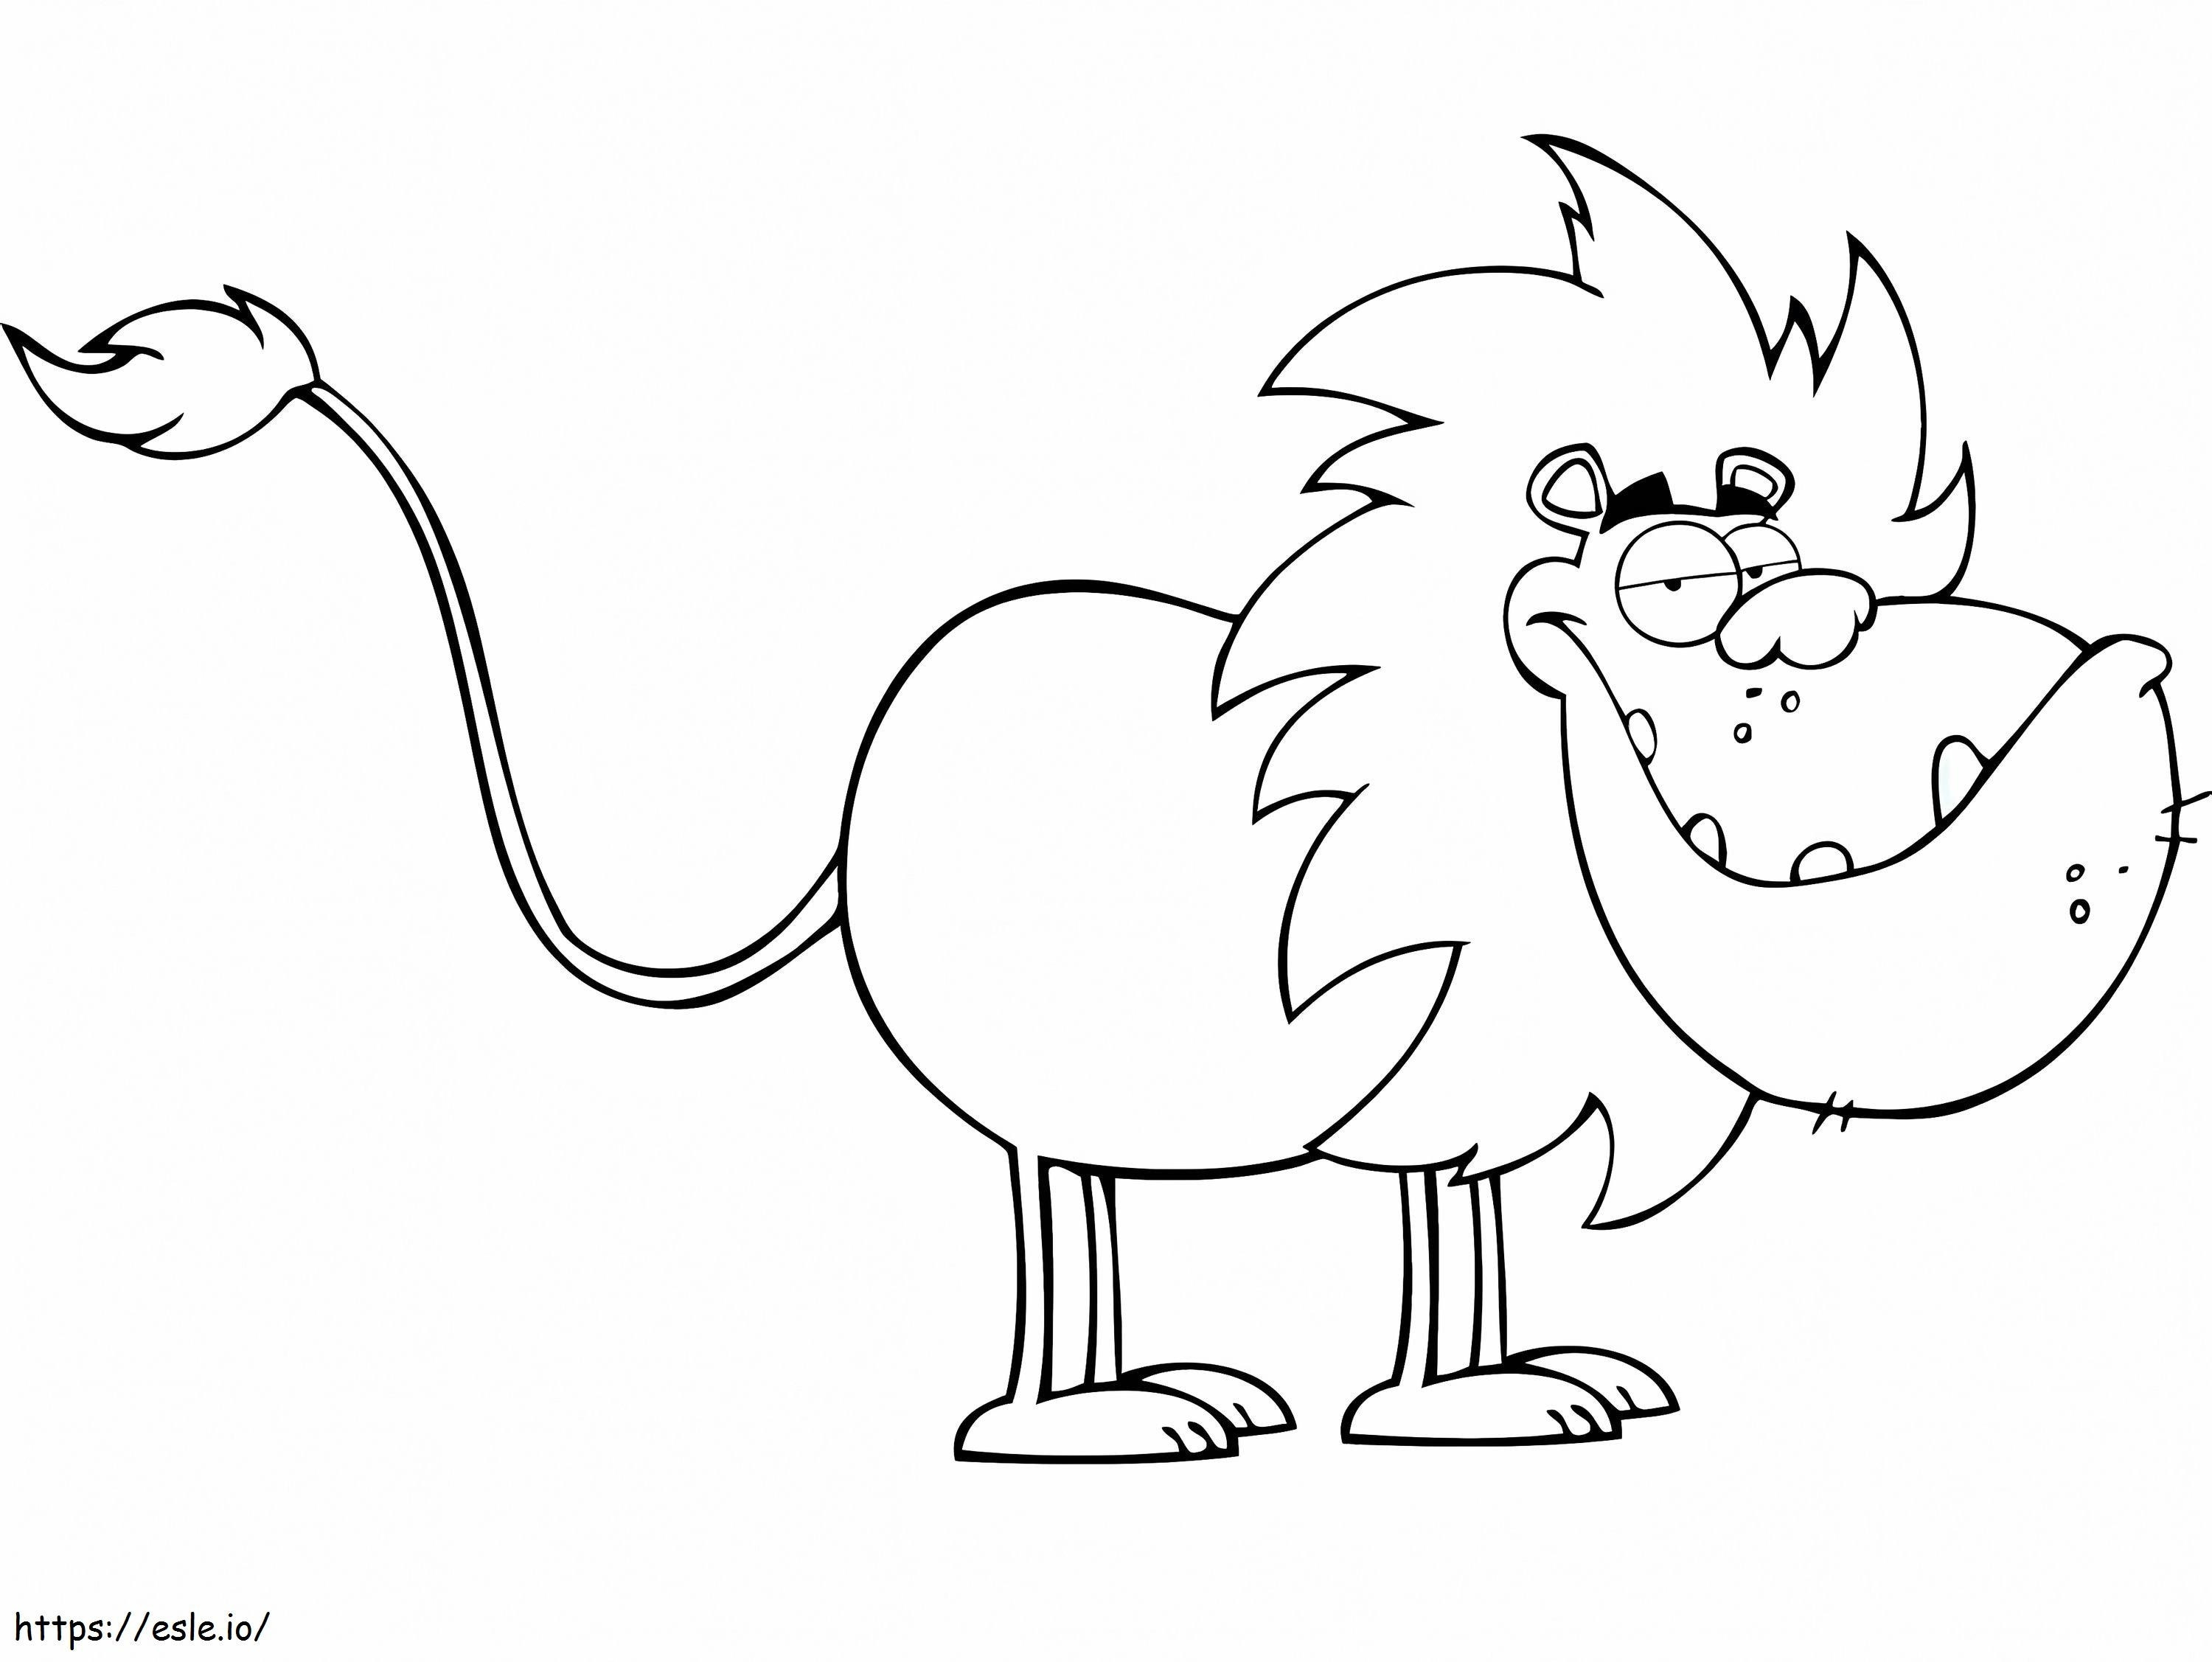 Leão alegre dos desenhos animados para colorir